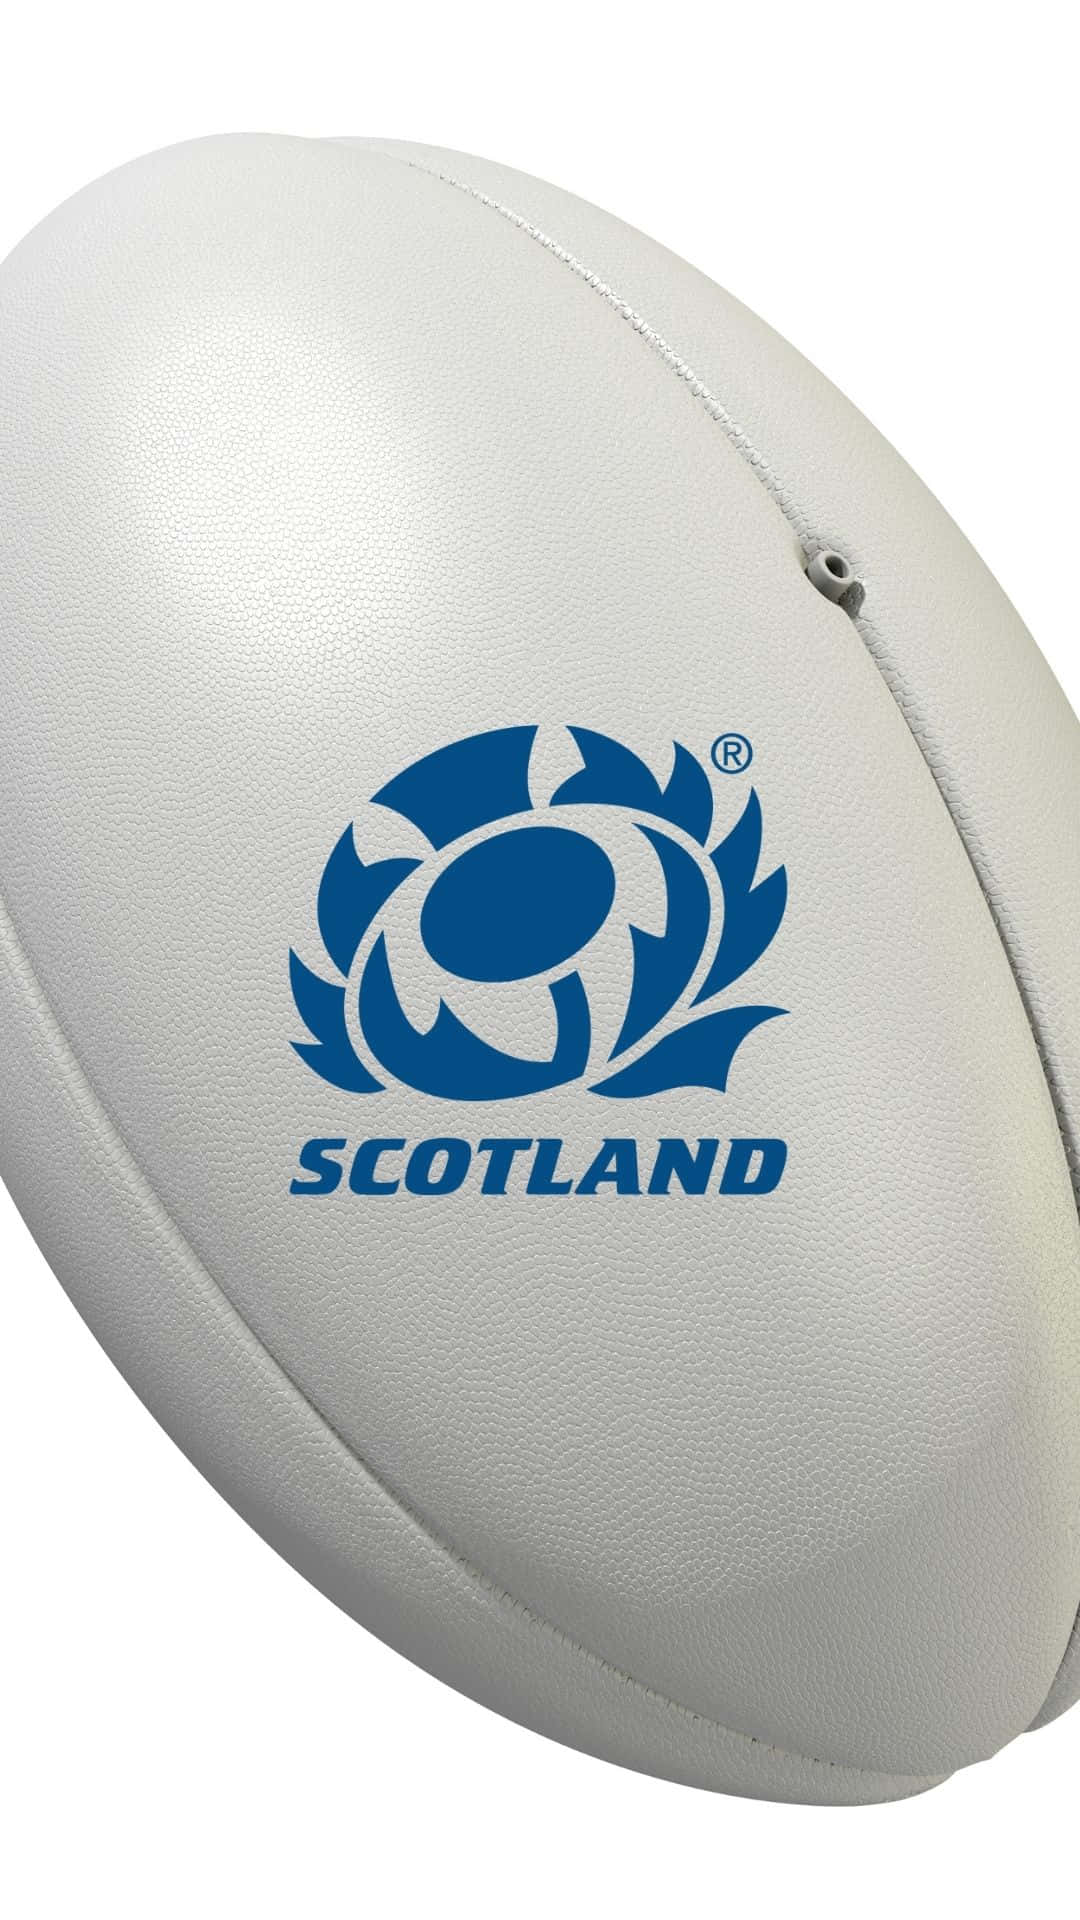 Equipode Rugby De Escocia En Acción. Fondo de pantalla